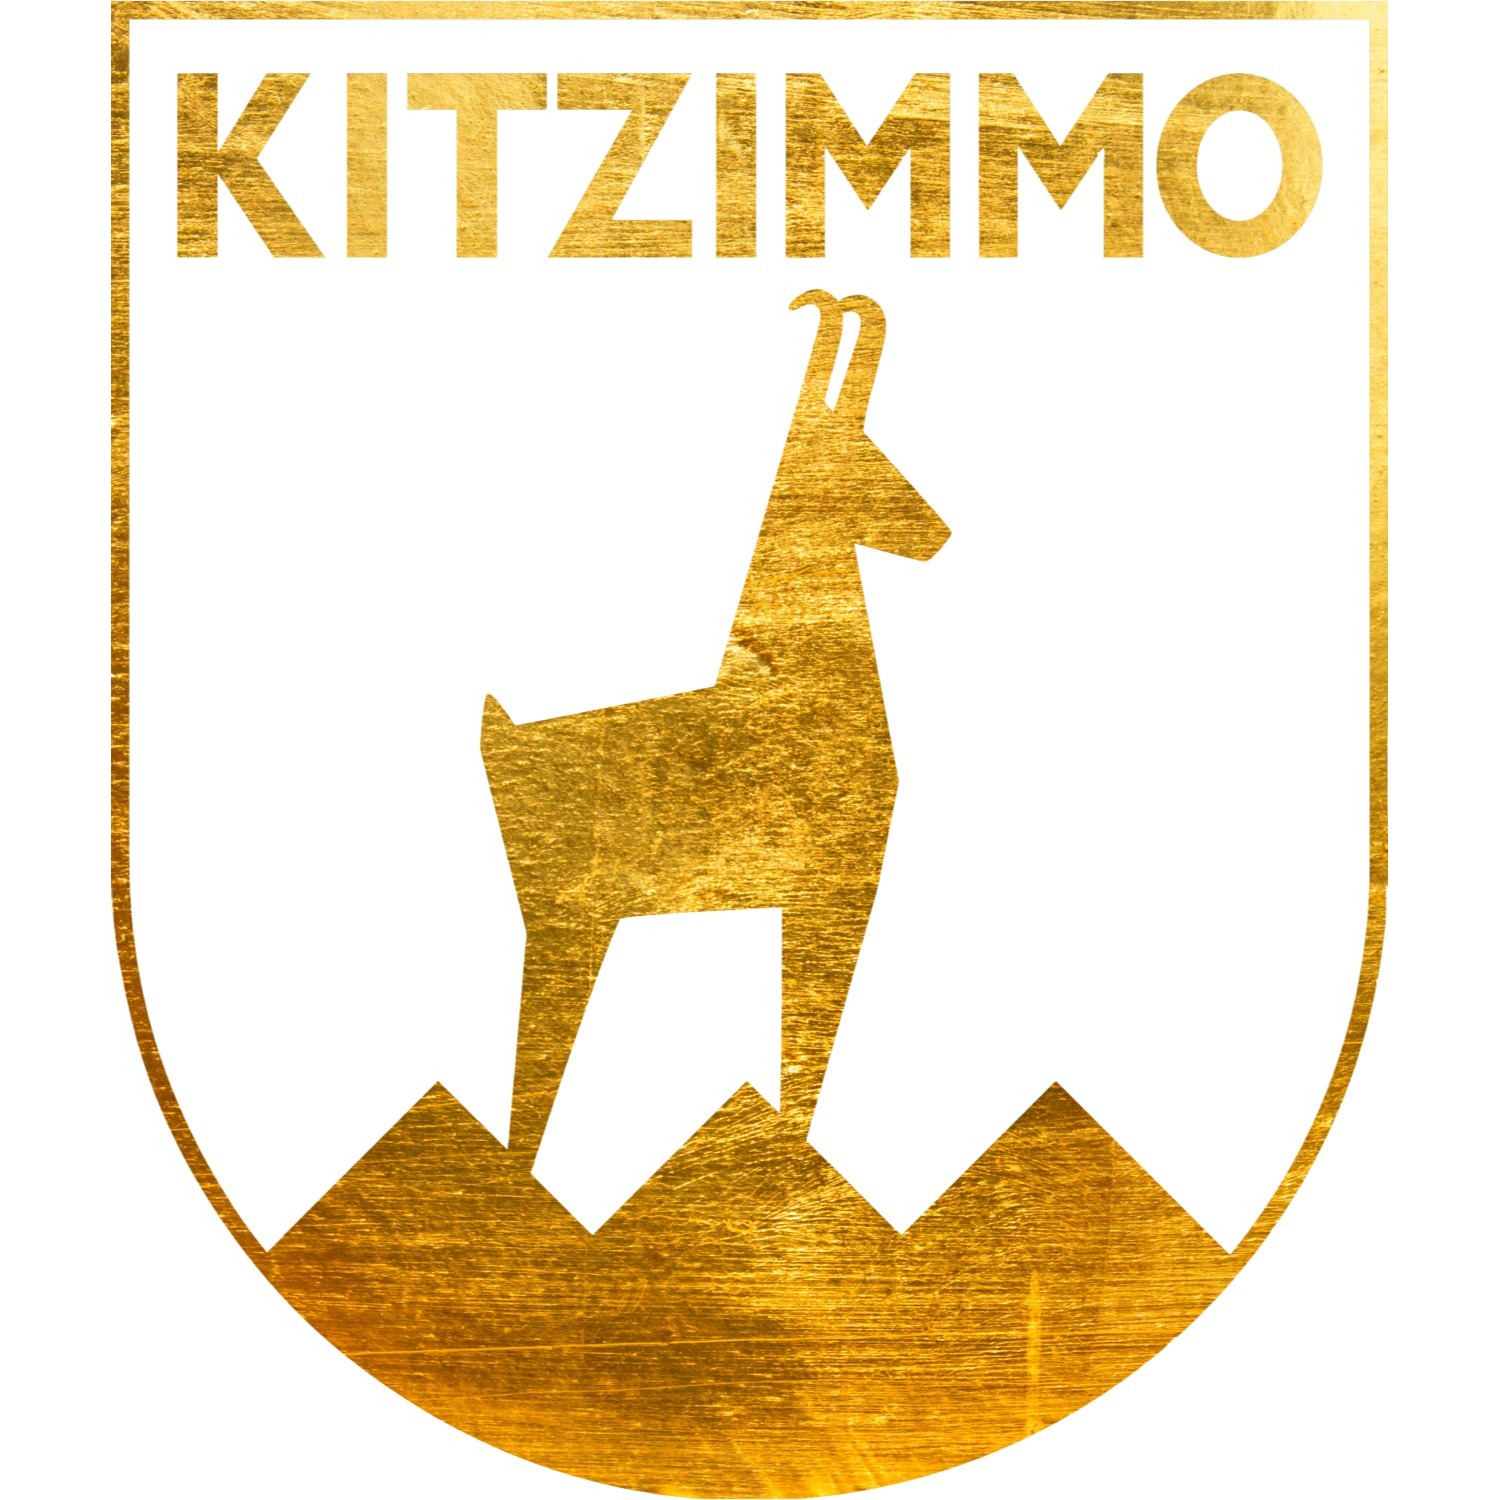 KITZIMMO - Real Estate - OG Logo